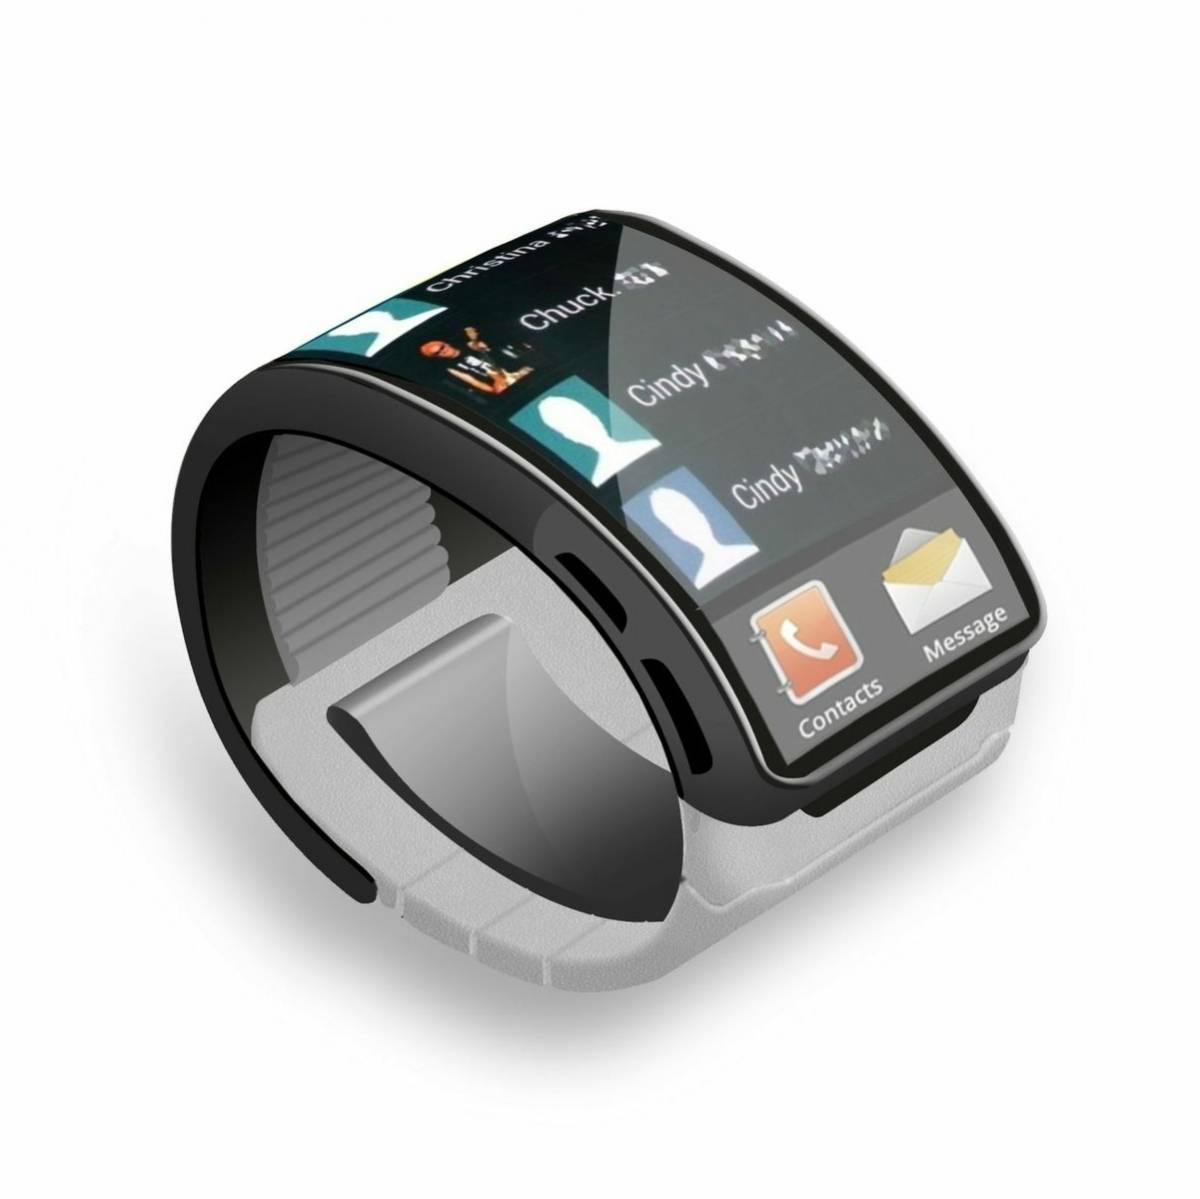 Обзор samsung galaxy watch active: умные часы для активных пользователей